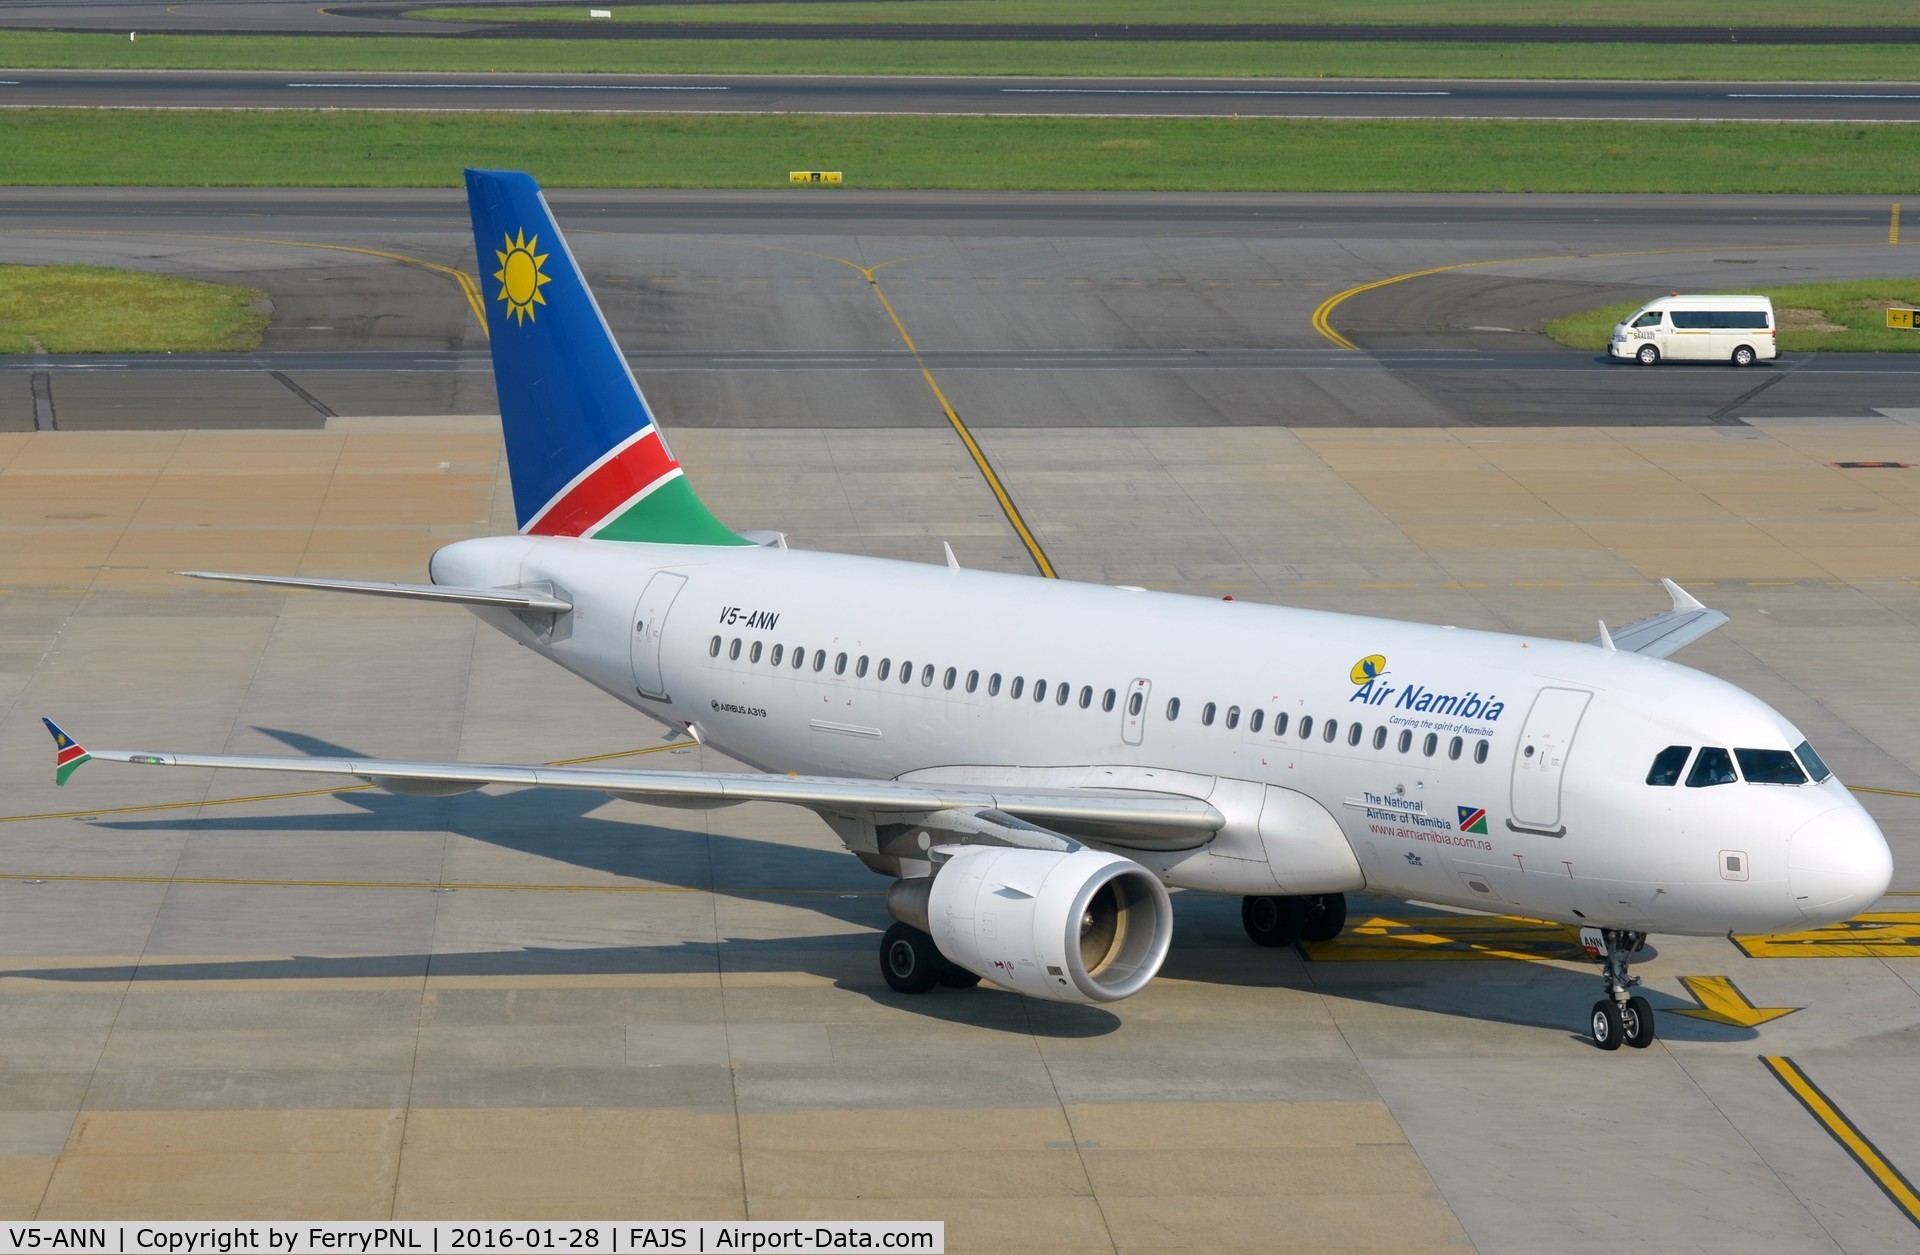 V5-ANN, 2012 Airbus A319-112 C/N 5400, Air Namibia A319 arriving